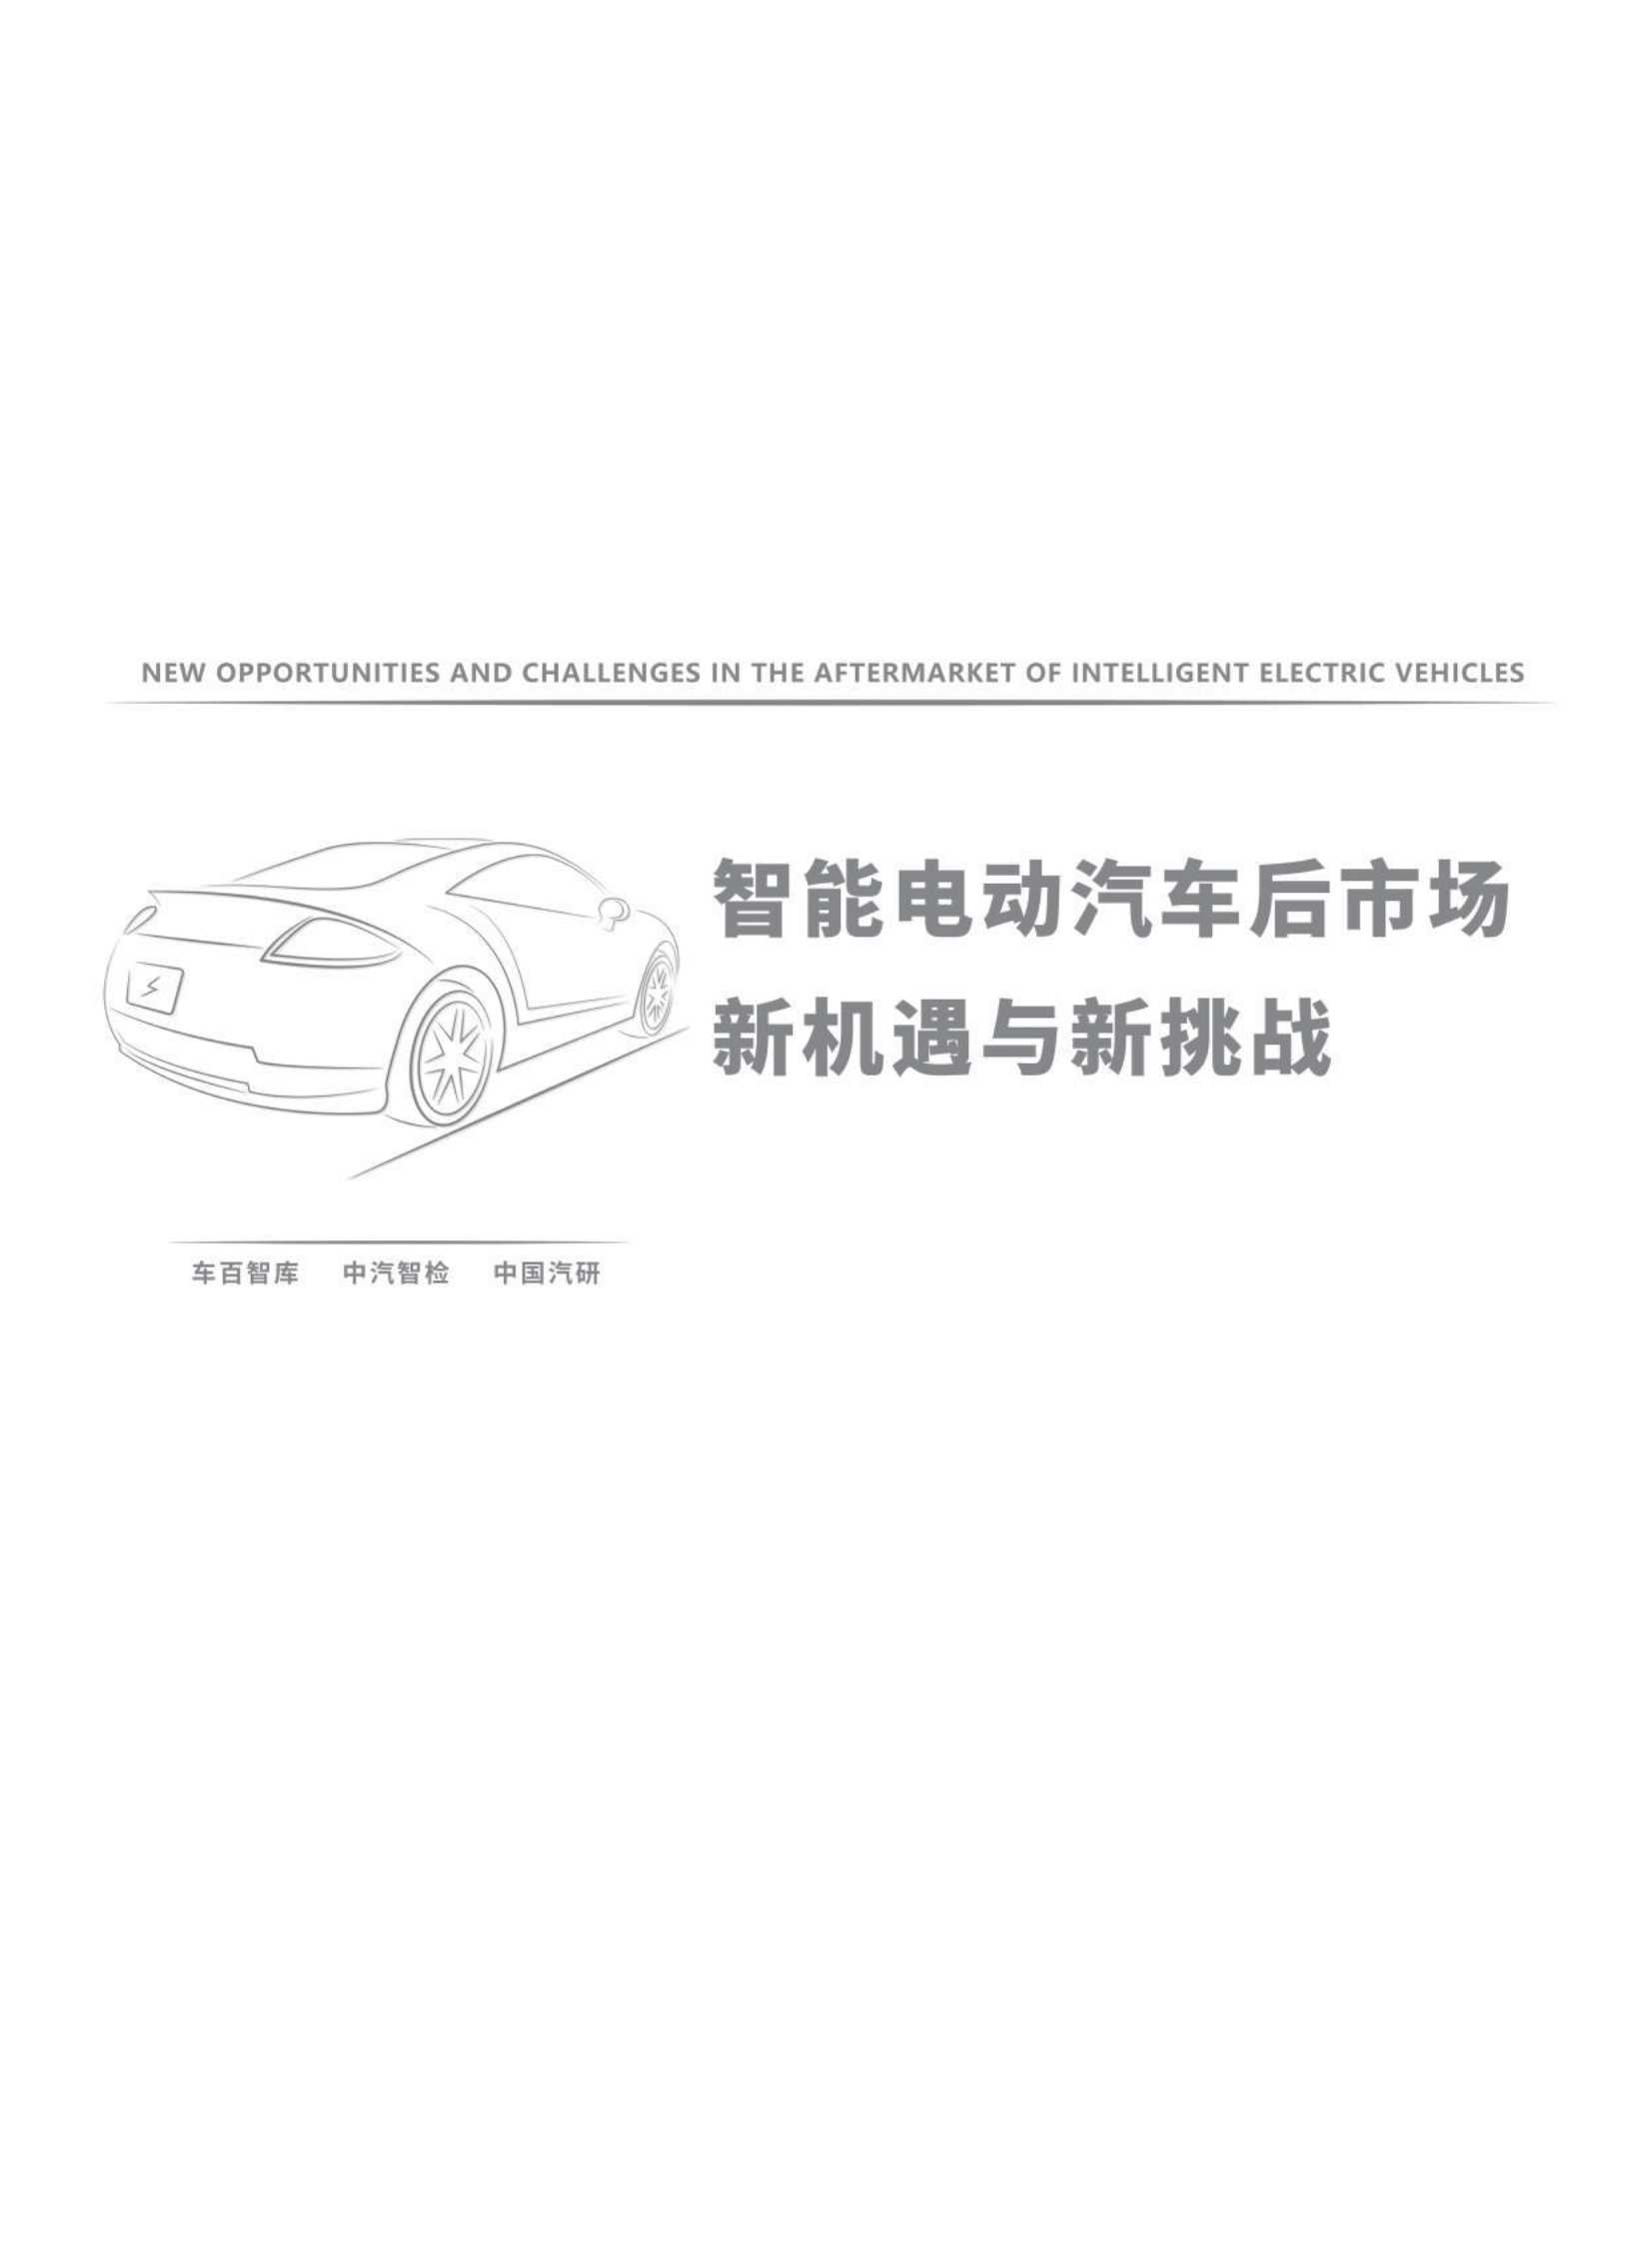 智能电动汽车后市场新机遇与新挑战-2022.04-73页